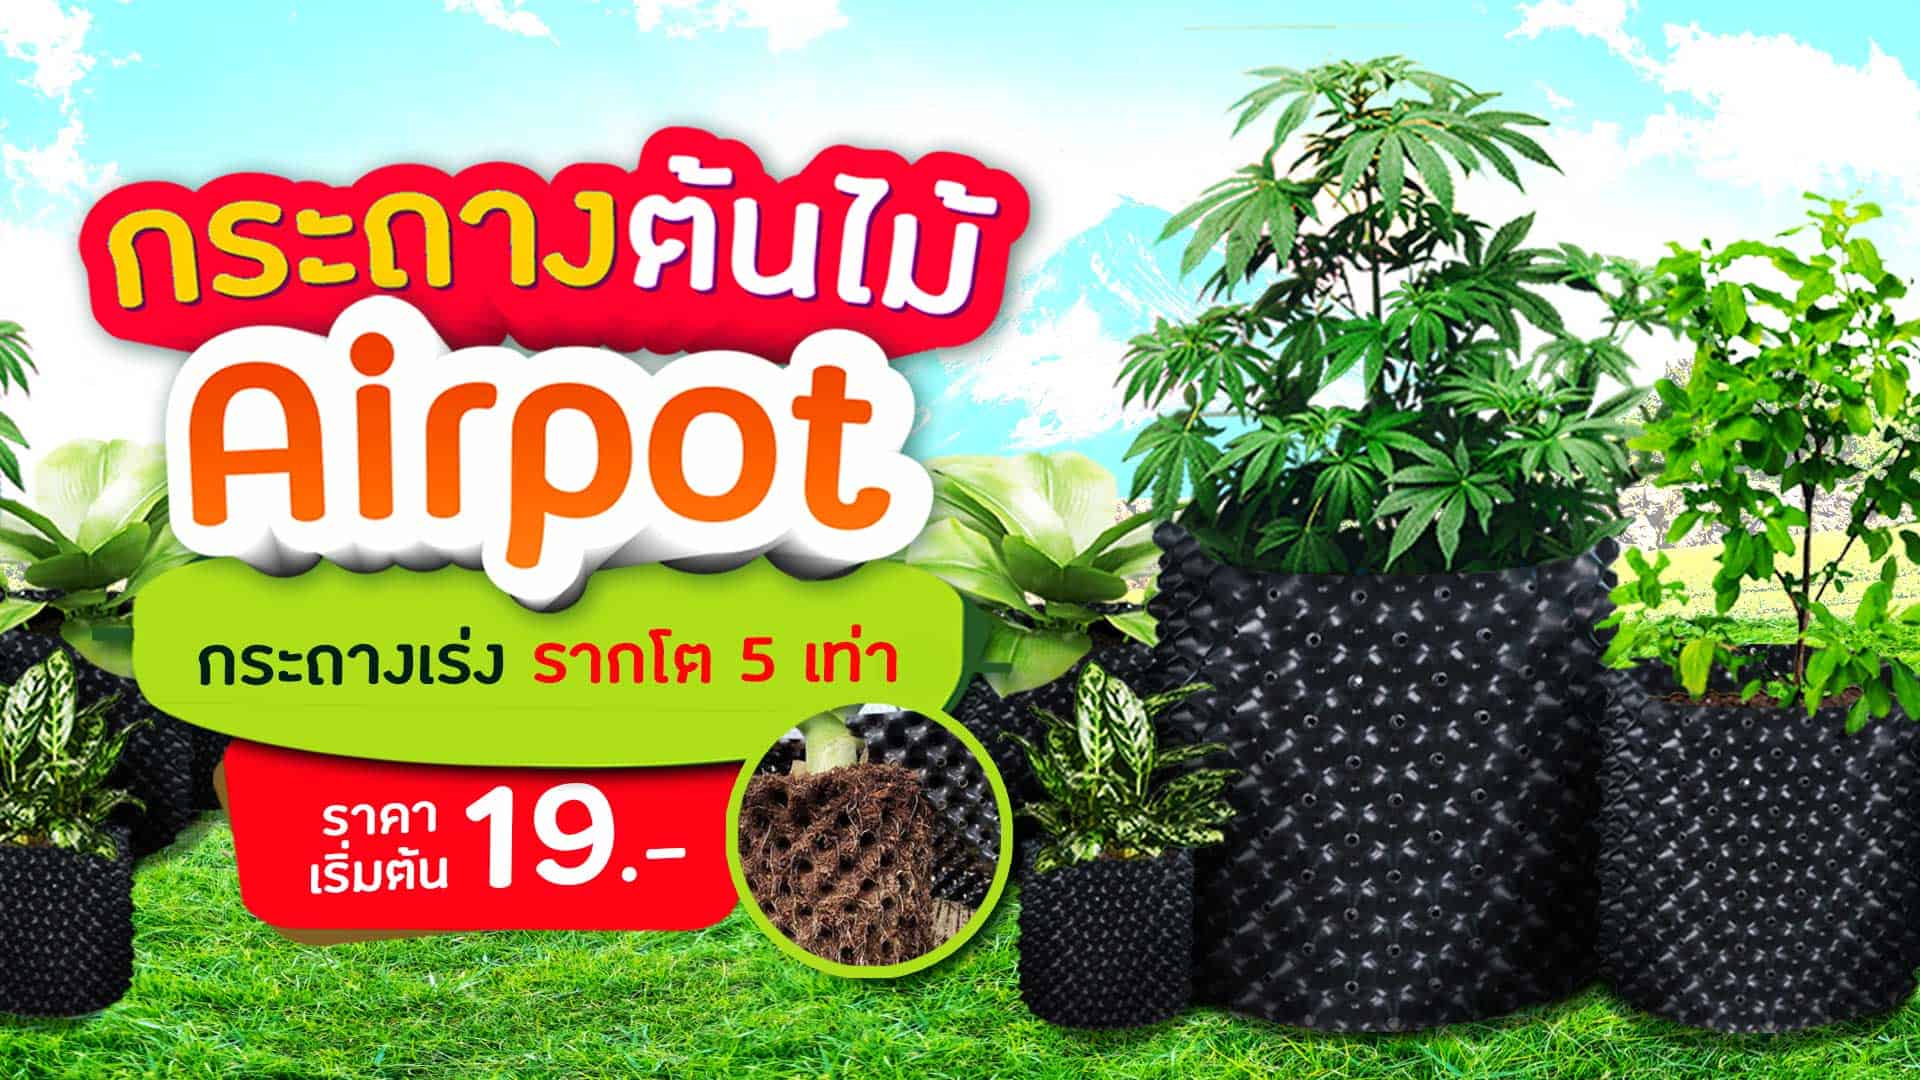 กระถางต้นไม้ Airpot ราคา